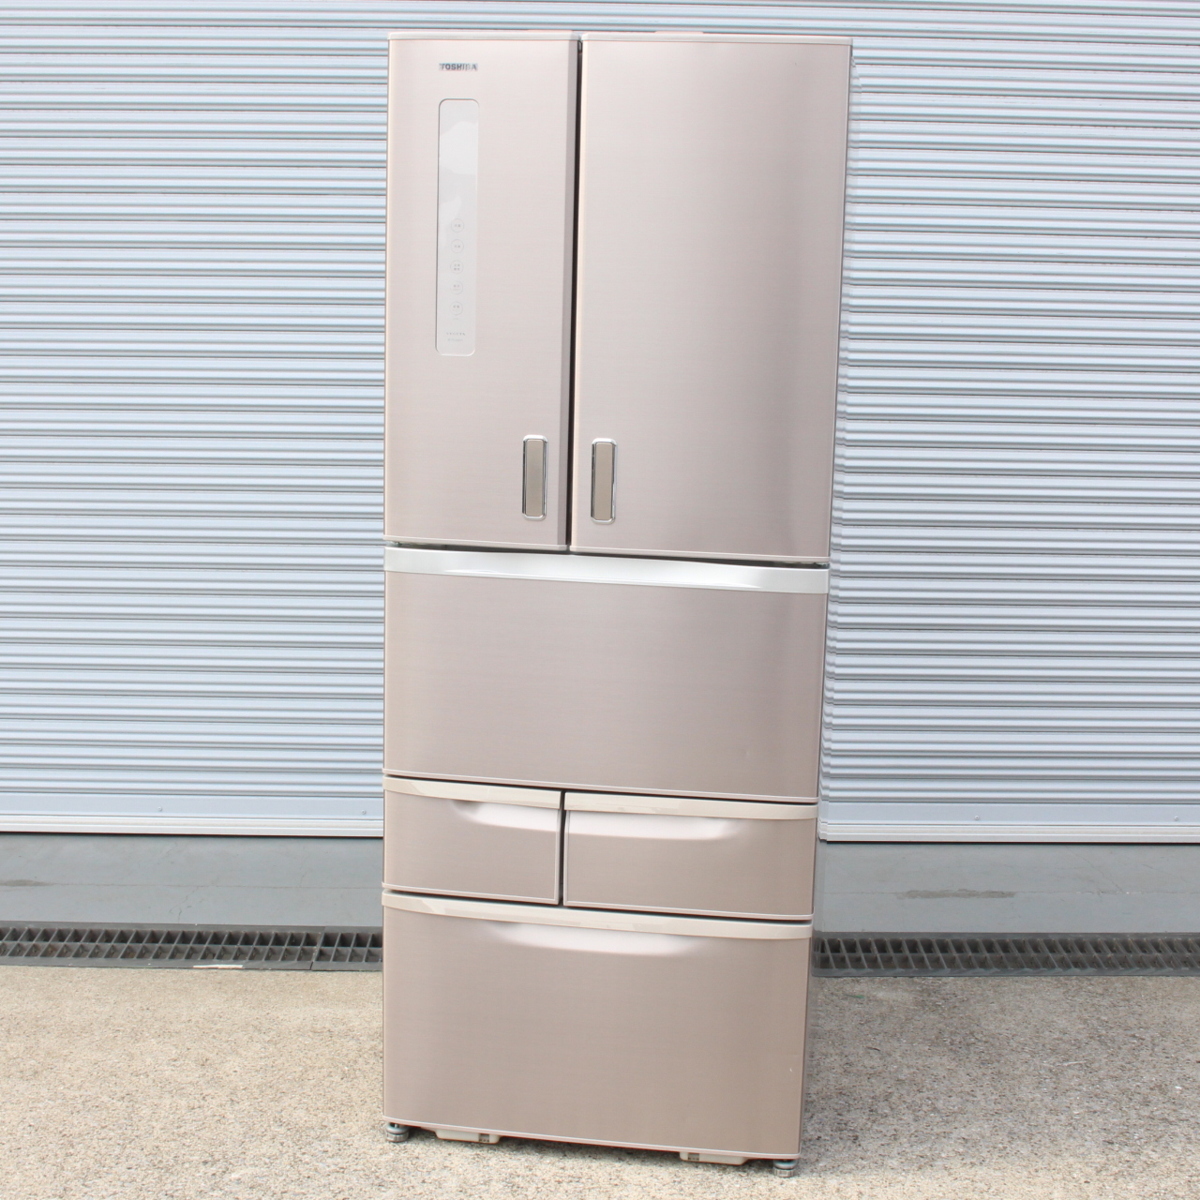 東芝 ノンフロン冷凍冷蔵庫 GR-G48FX(N) 481L 2014年製 6ドア レンチドア ベジータ